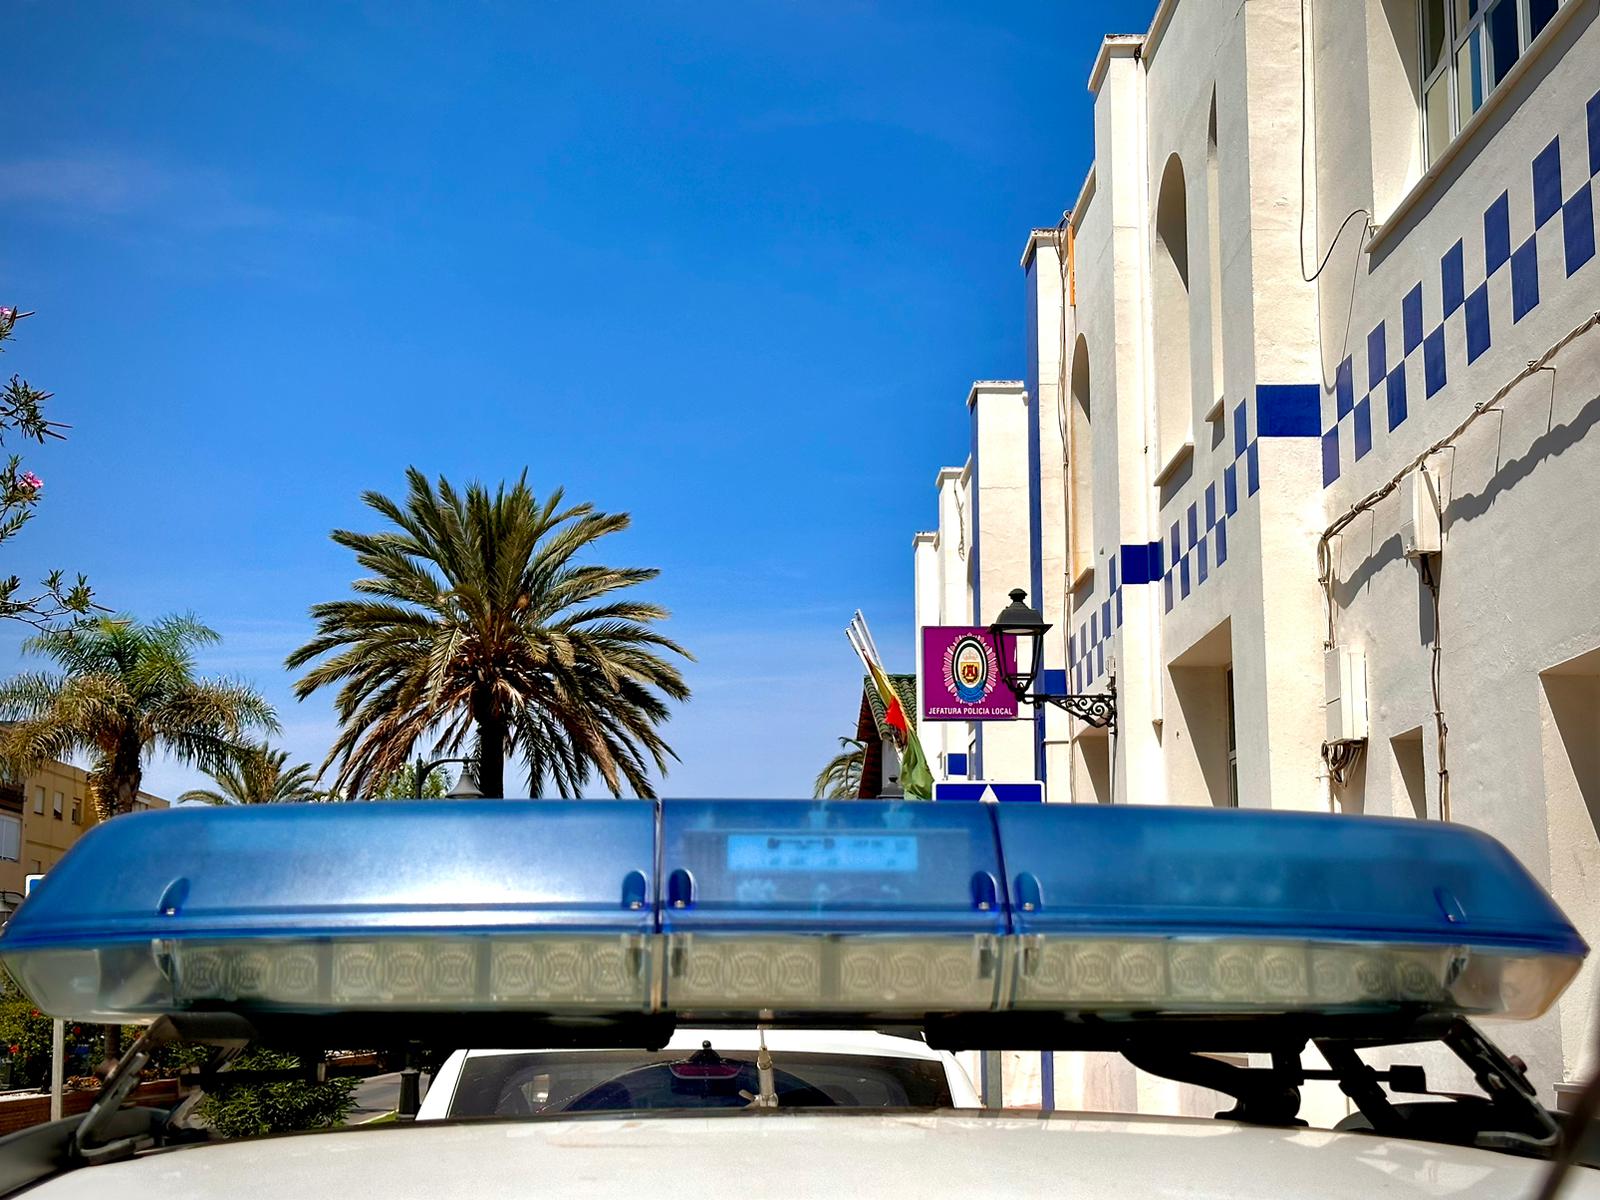 Recuperan en Los Barrios un vehículo clásico robado en Marbella